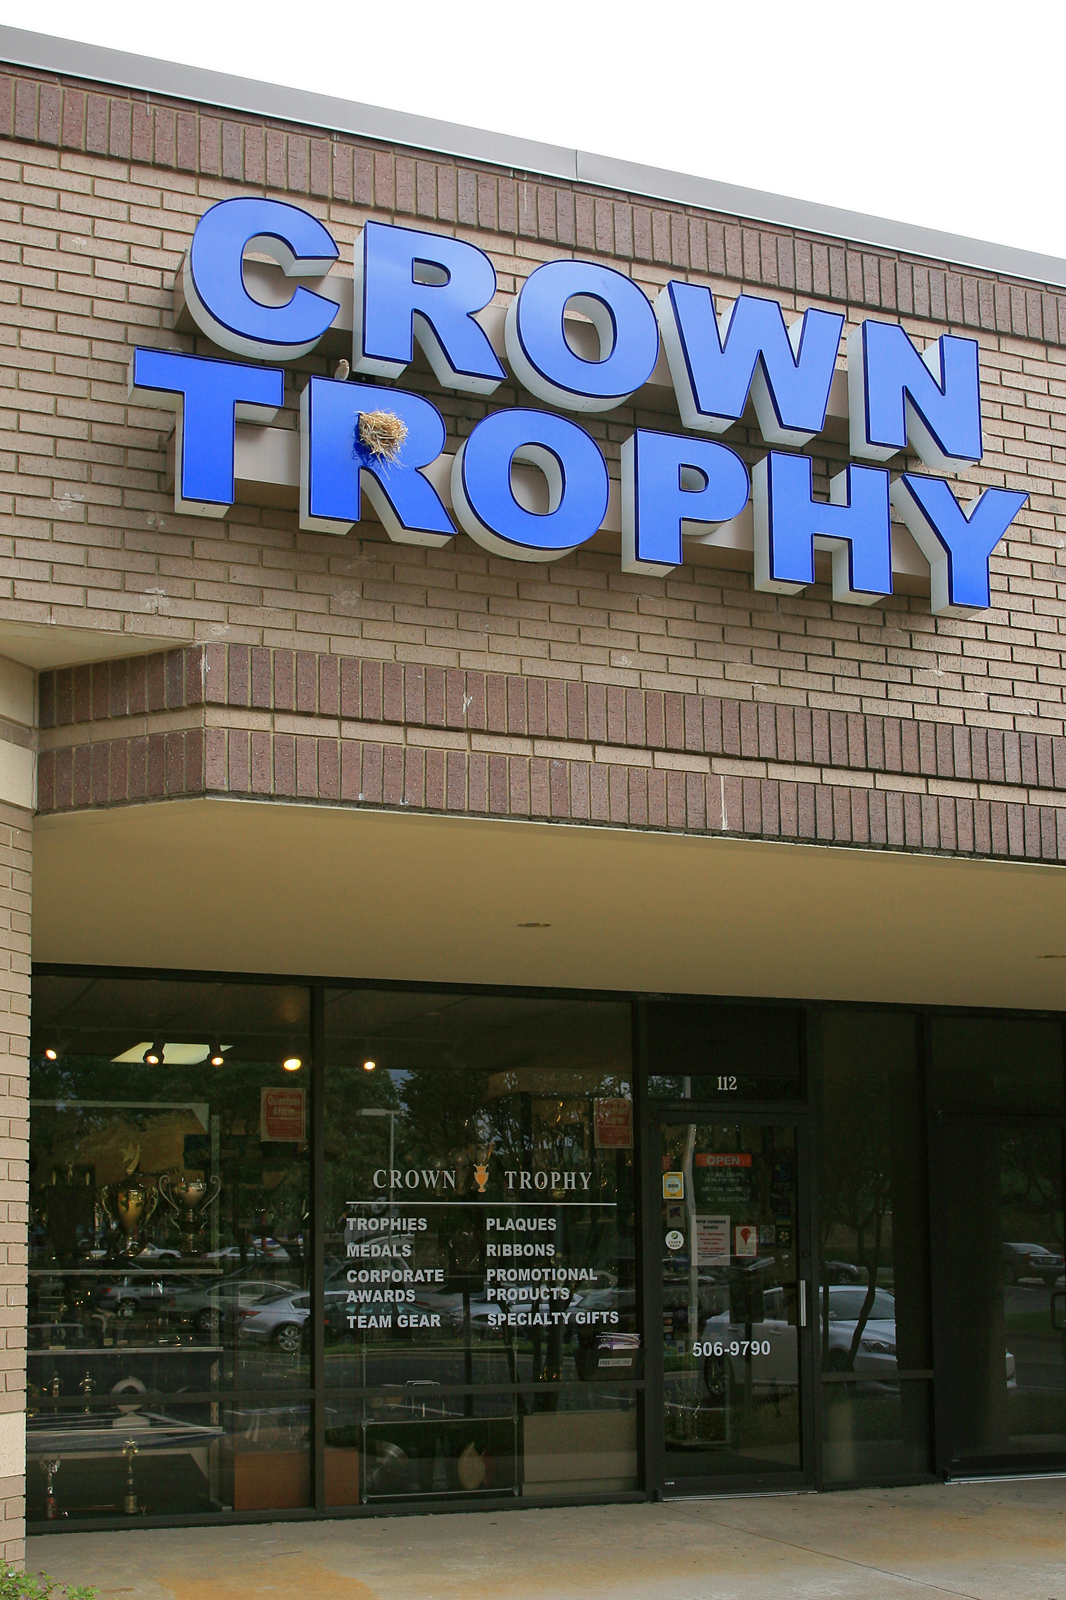 Crown Trophy